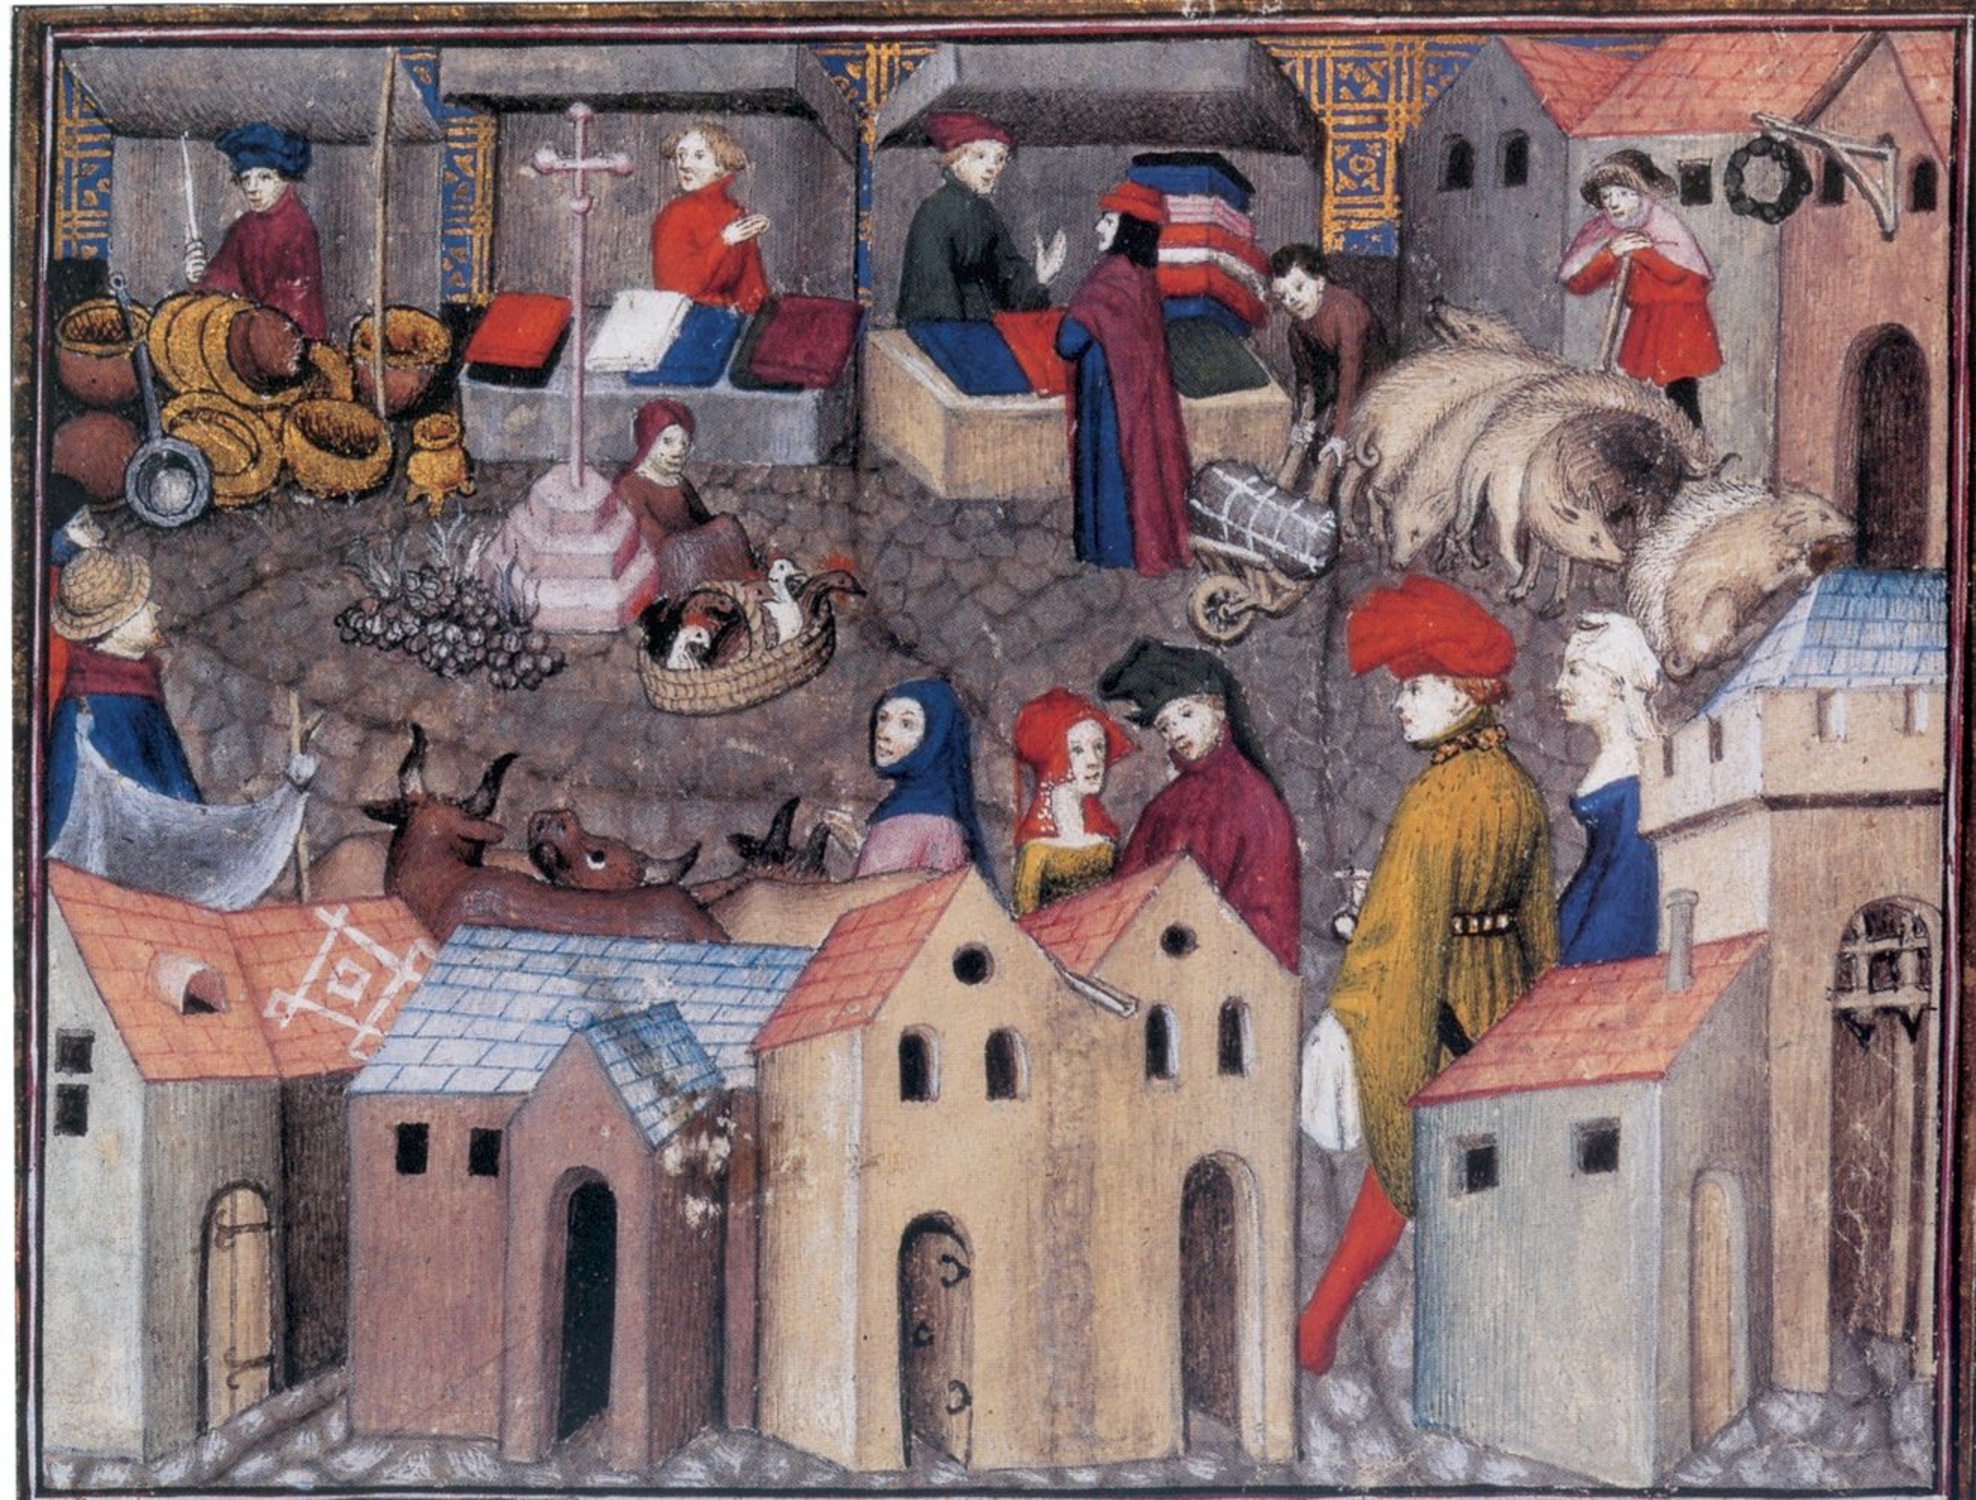 Scène de foire dans "Le chevalier errant" de Thomas de Saluce, vers 1403 - 1404 (BNF, ms. fr 12559, f° 167). © BNF.